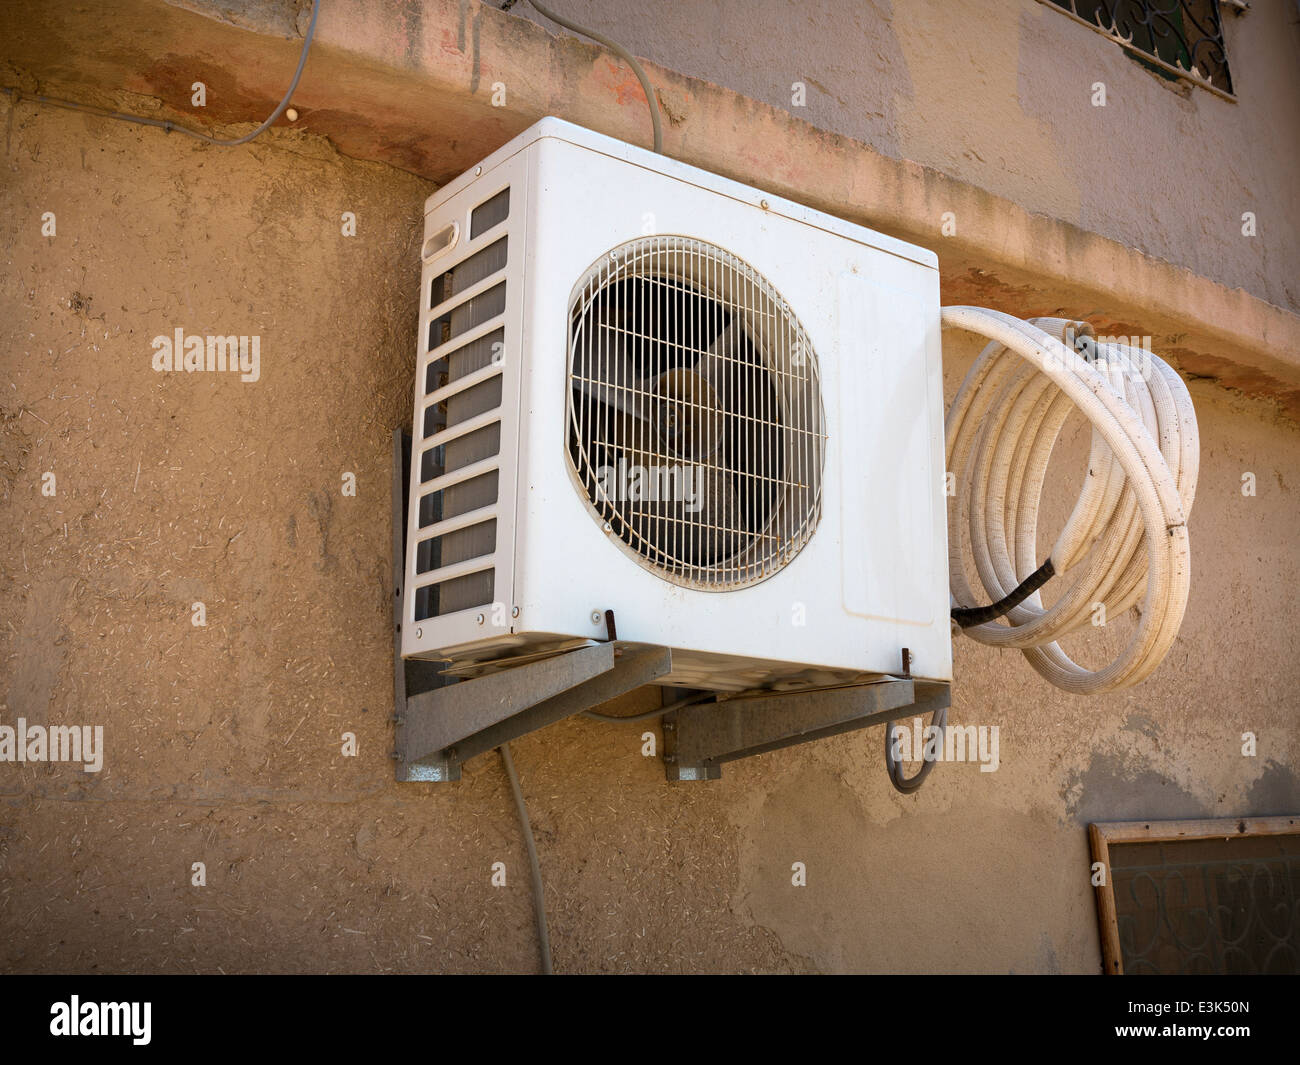 Ein extern montierten Klimaanlage Schrankwand mit einer Spule aus  Kunststoff Schlauch Wandmontage staubigen Lehmziegel-Marokko Afrika  Stockfotografie - Alamy